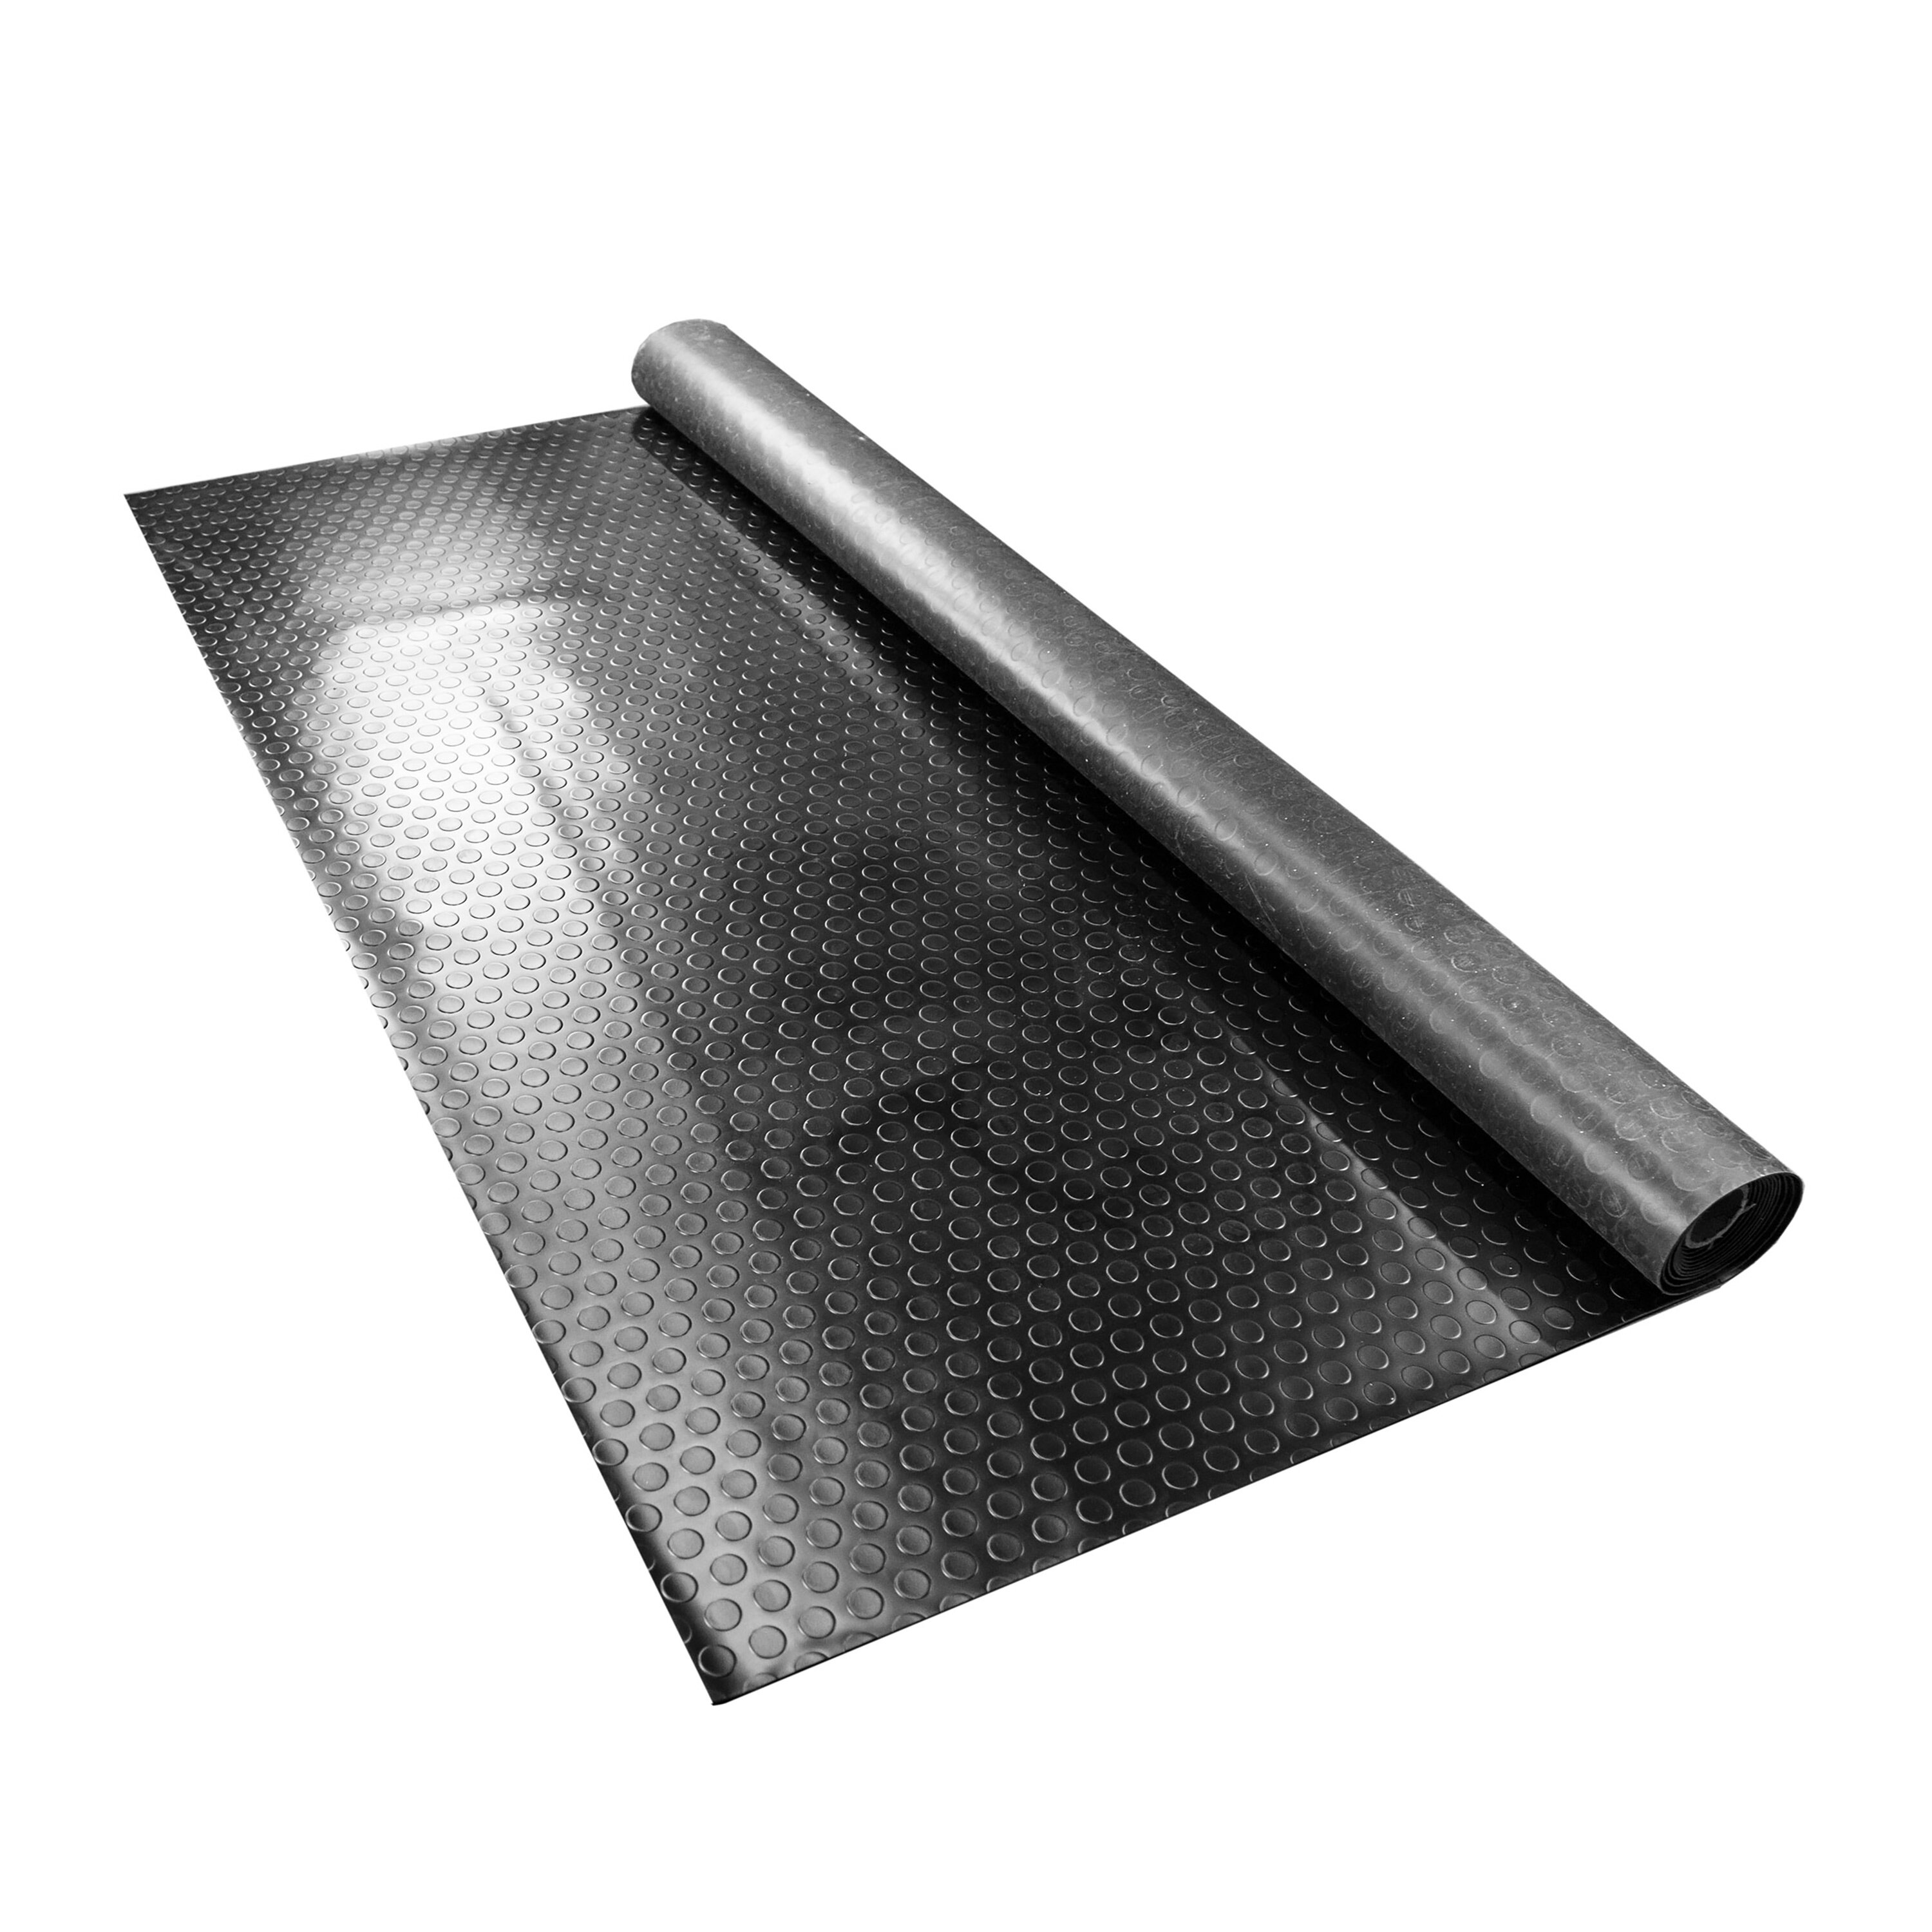 https://assets.wfcdn.com/im/92038918/compr-r85/1271/127194925/flooringinc-90-w-x-204-l-garage-flooring-roll-in-stainless-steel.jpg